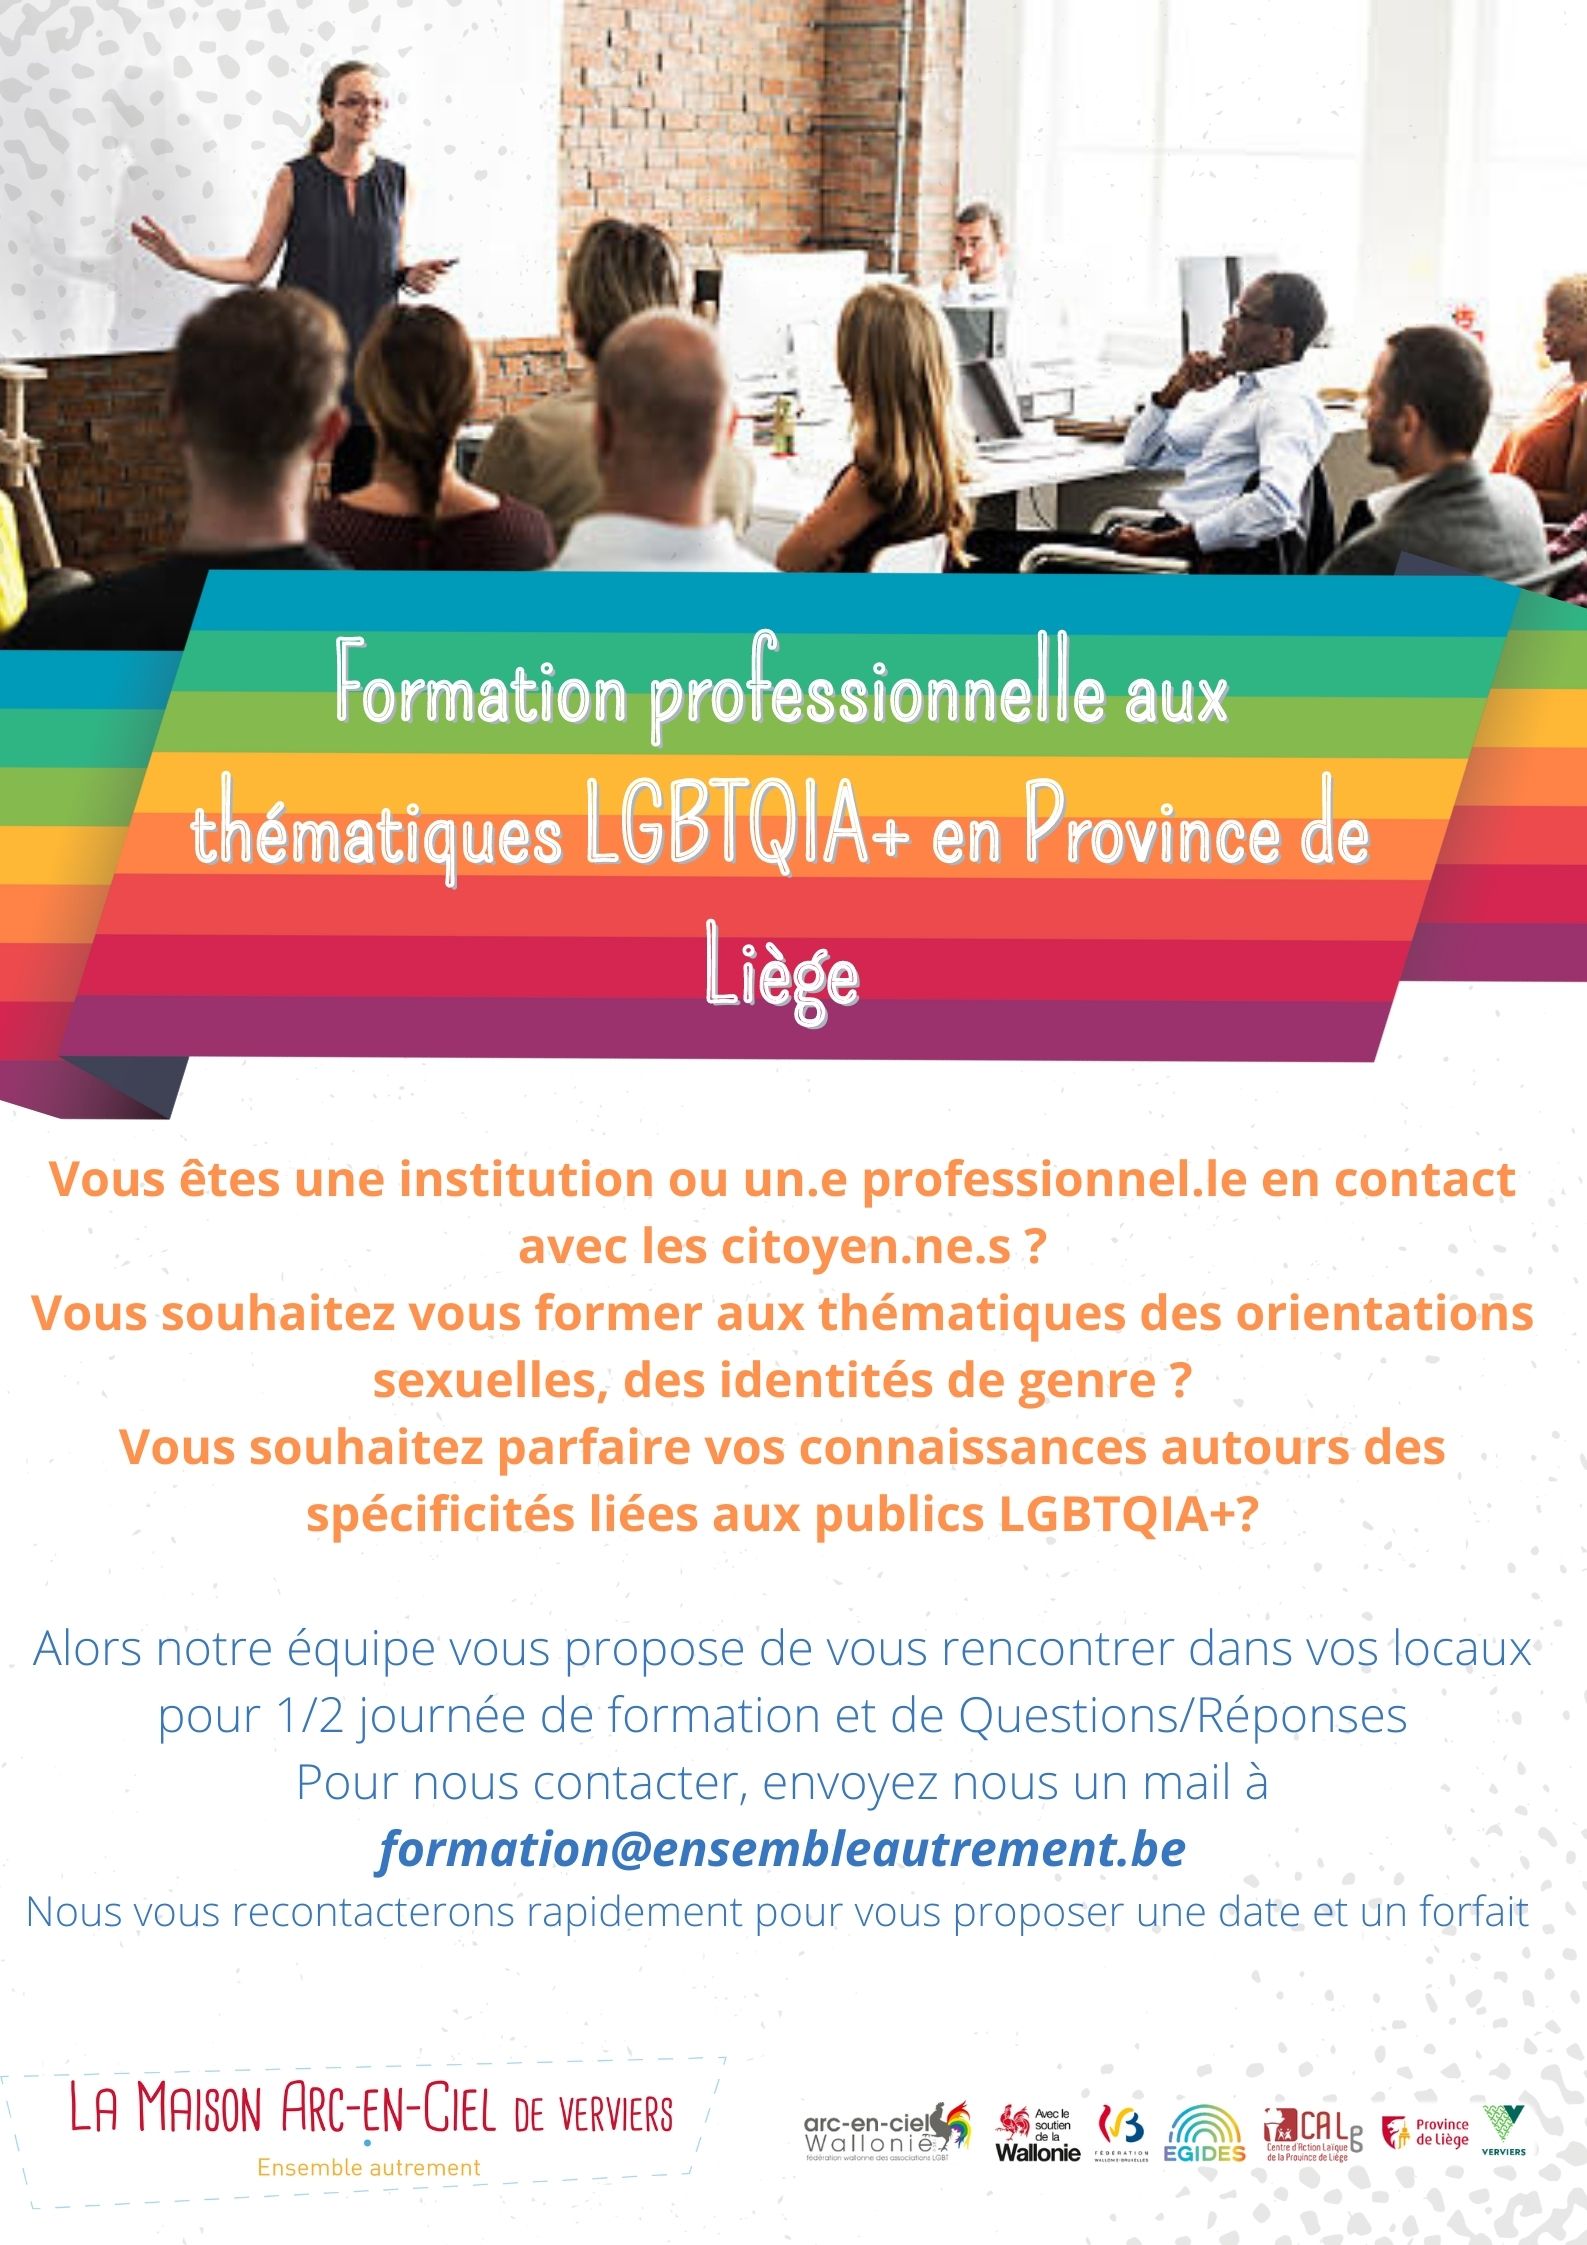 Formation professionnelle aux thématiques LGBTQIA+ en Province de Liège